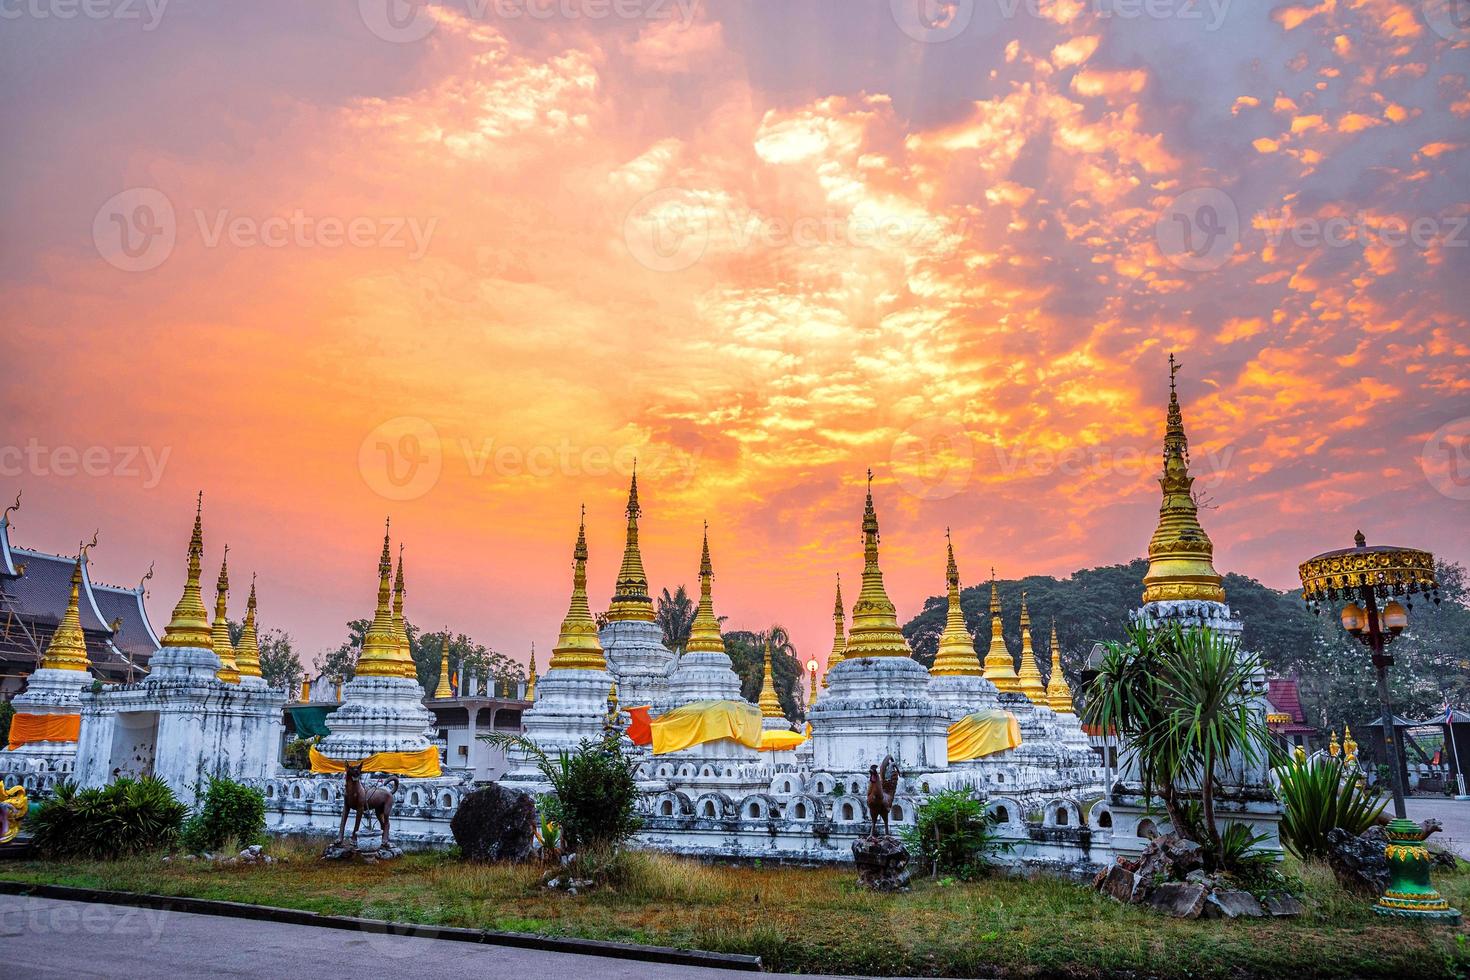 vingt pagodes temple est un temple bouddhiste dans la province de lampang, thaïlande photo